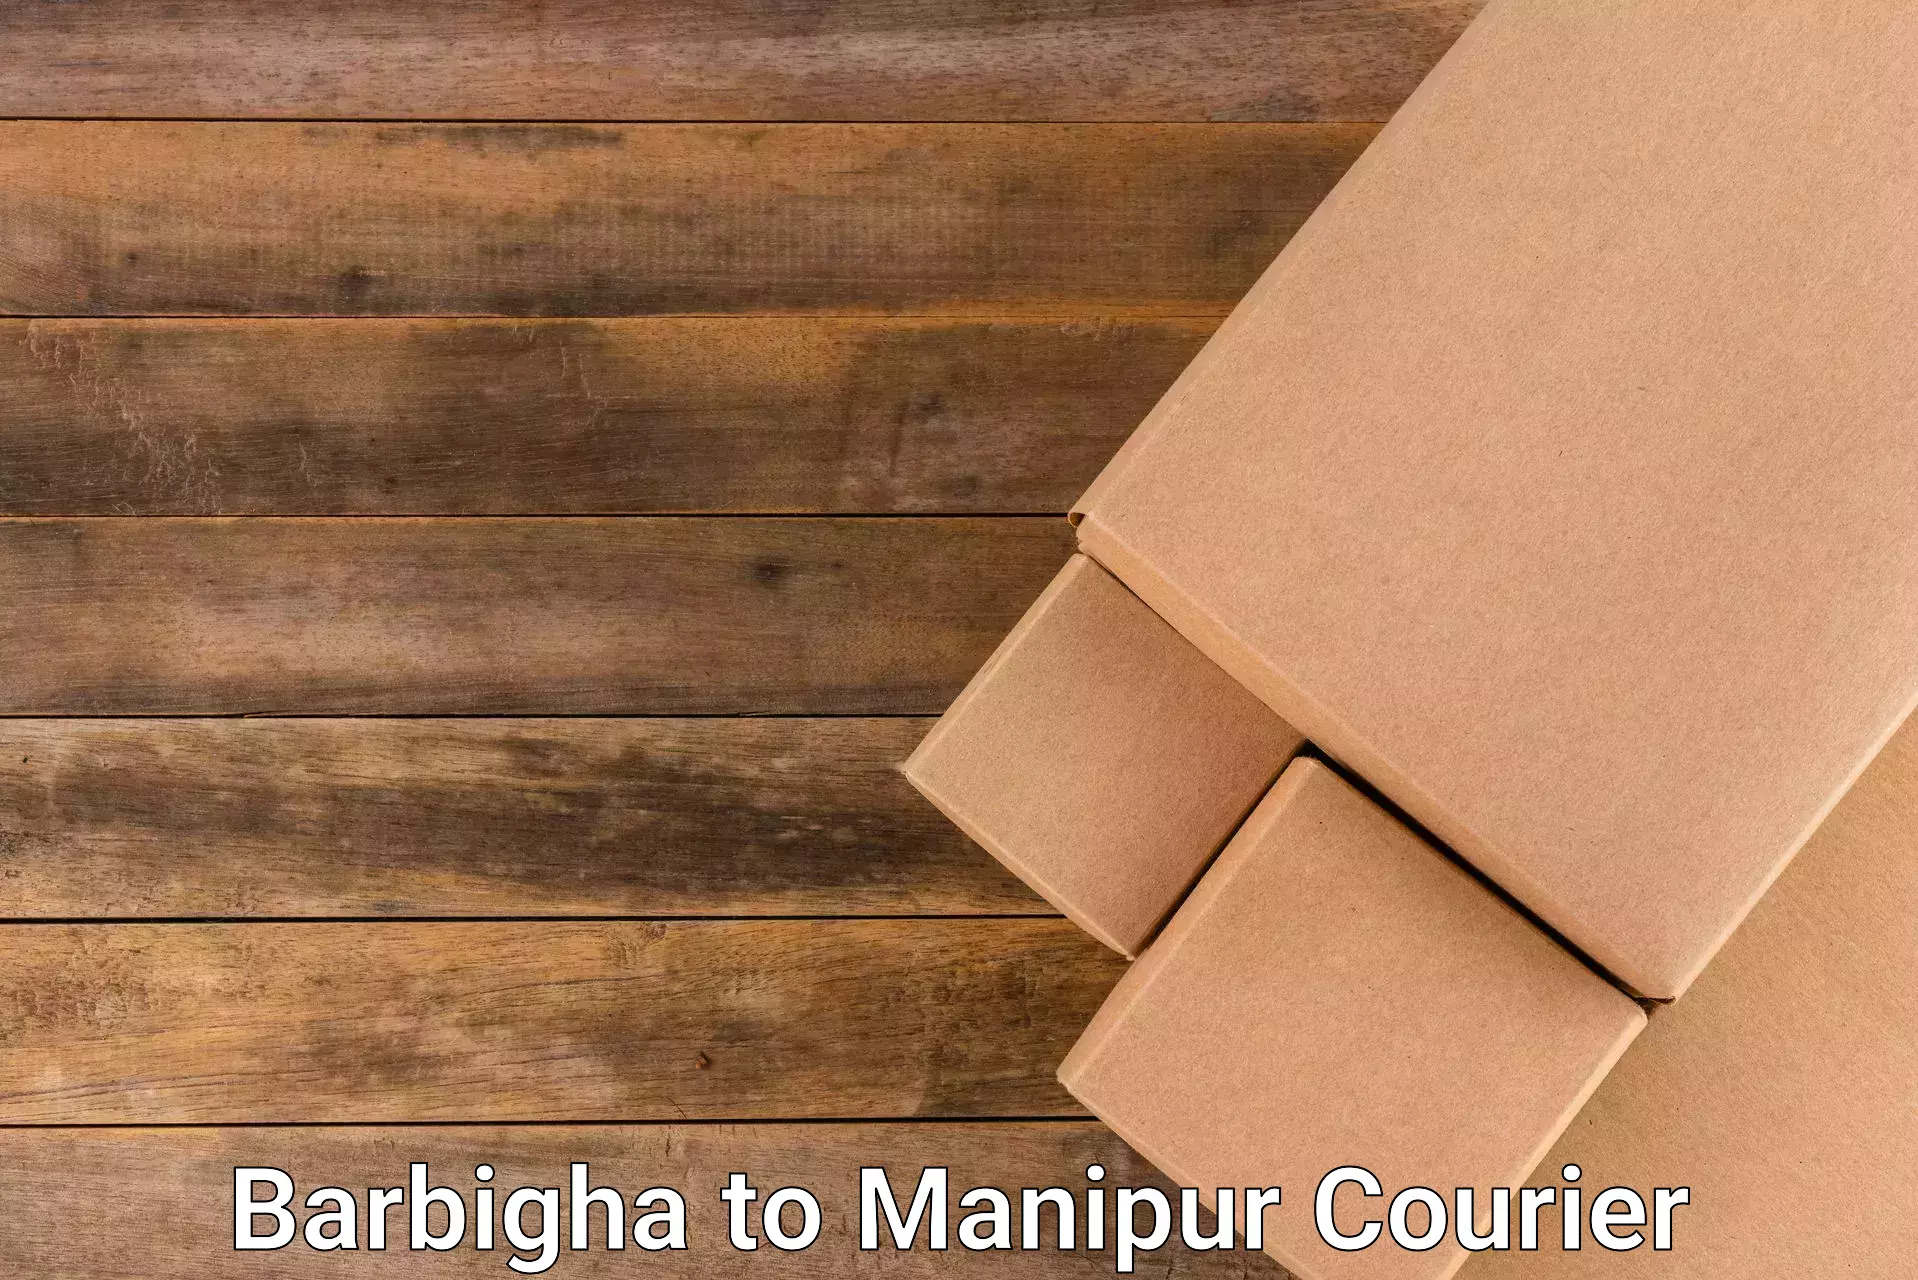 Courier service comparison Barbigha to Senapati